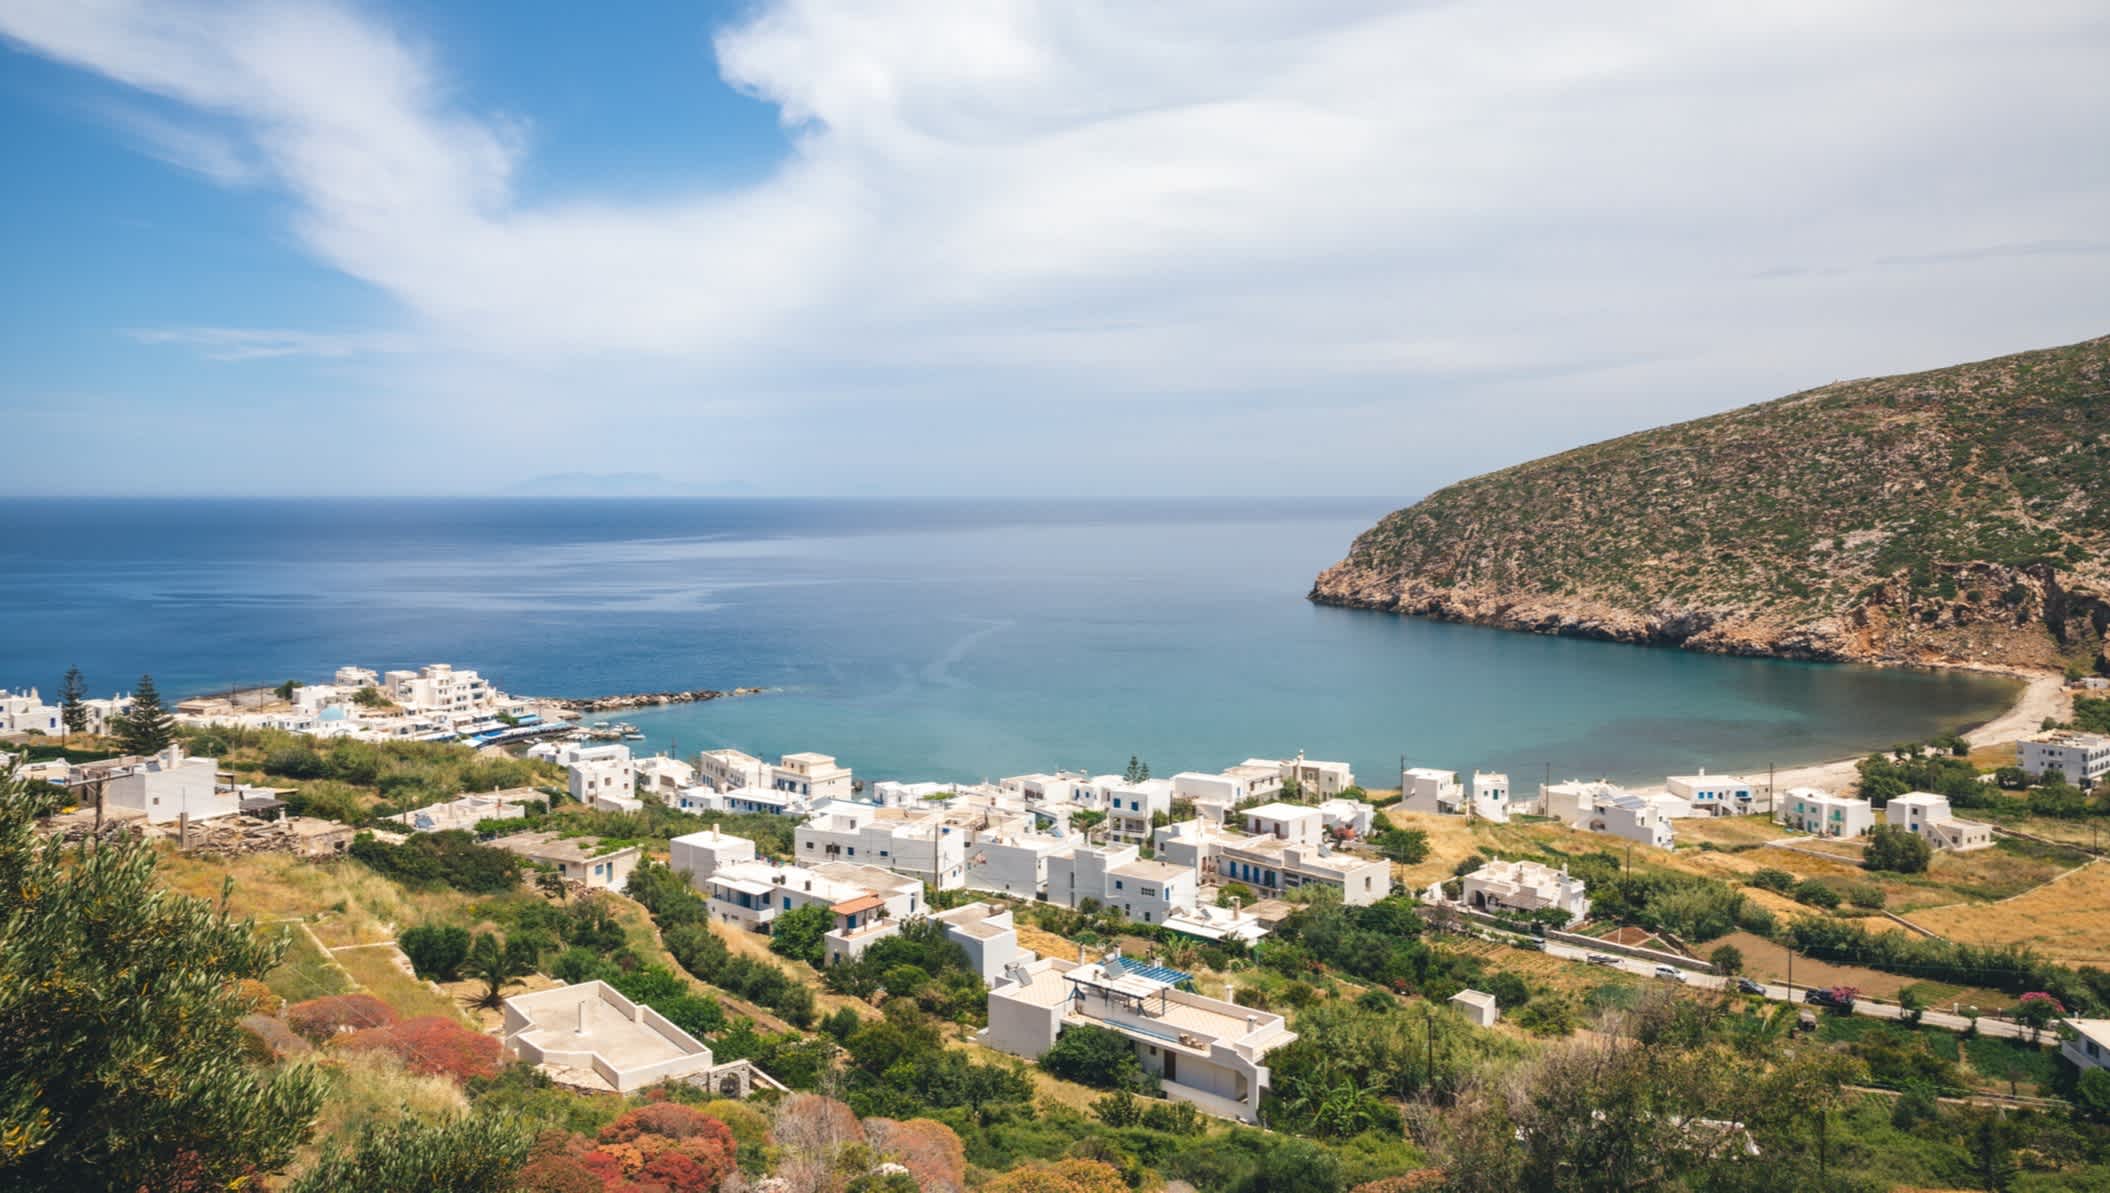 Blick auf die Stadt Apollonas auf Naxos, Griechenland, mit dem türkisblauen Meer und der Apollonas Bucht im Hintergrund.